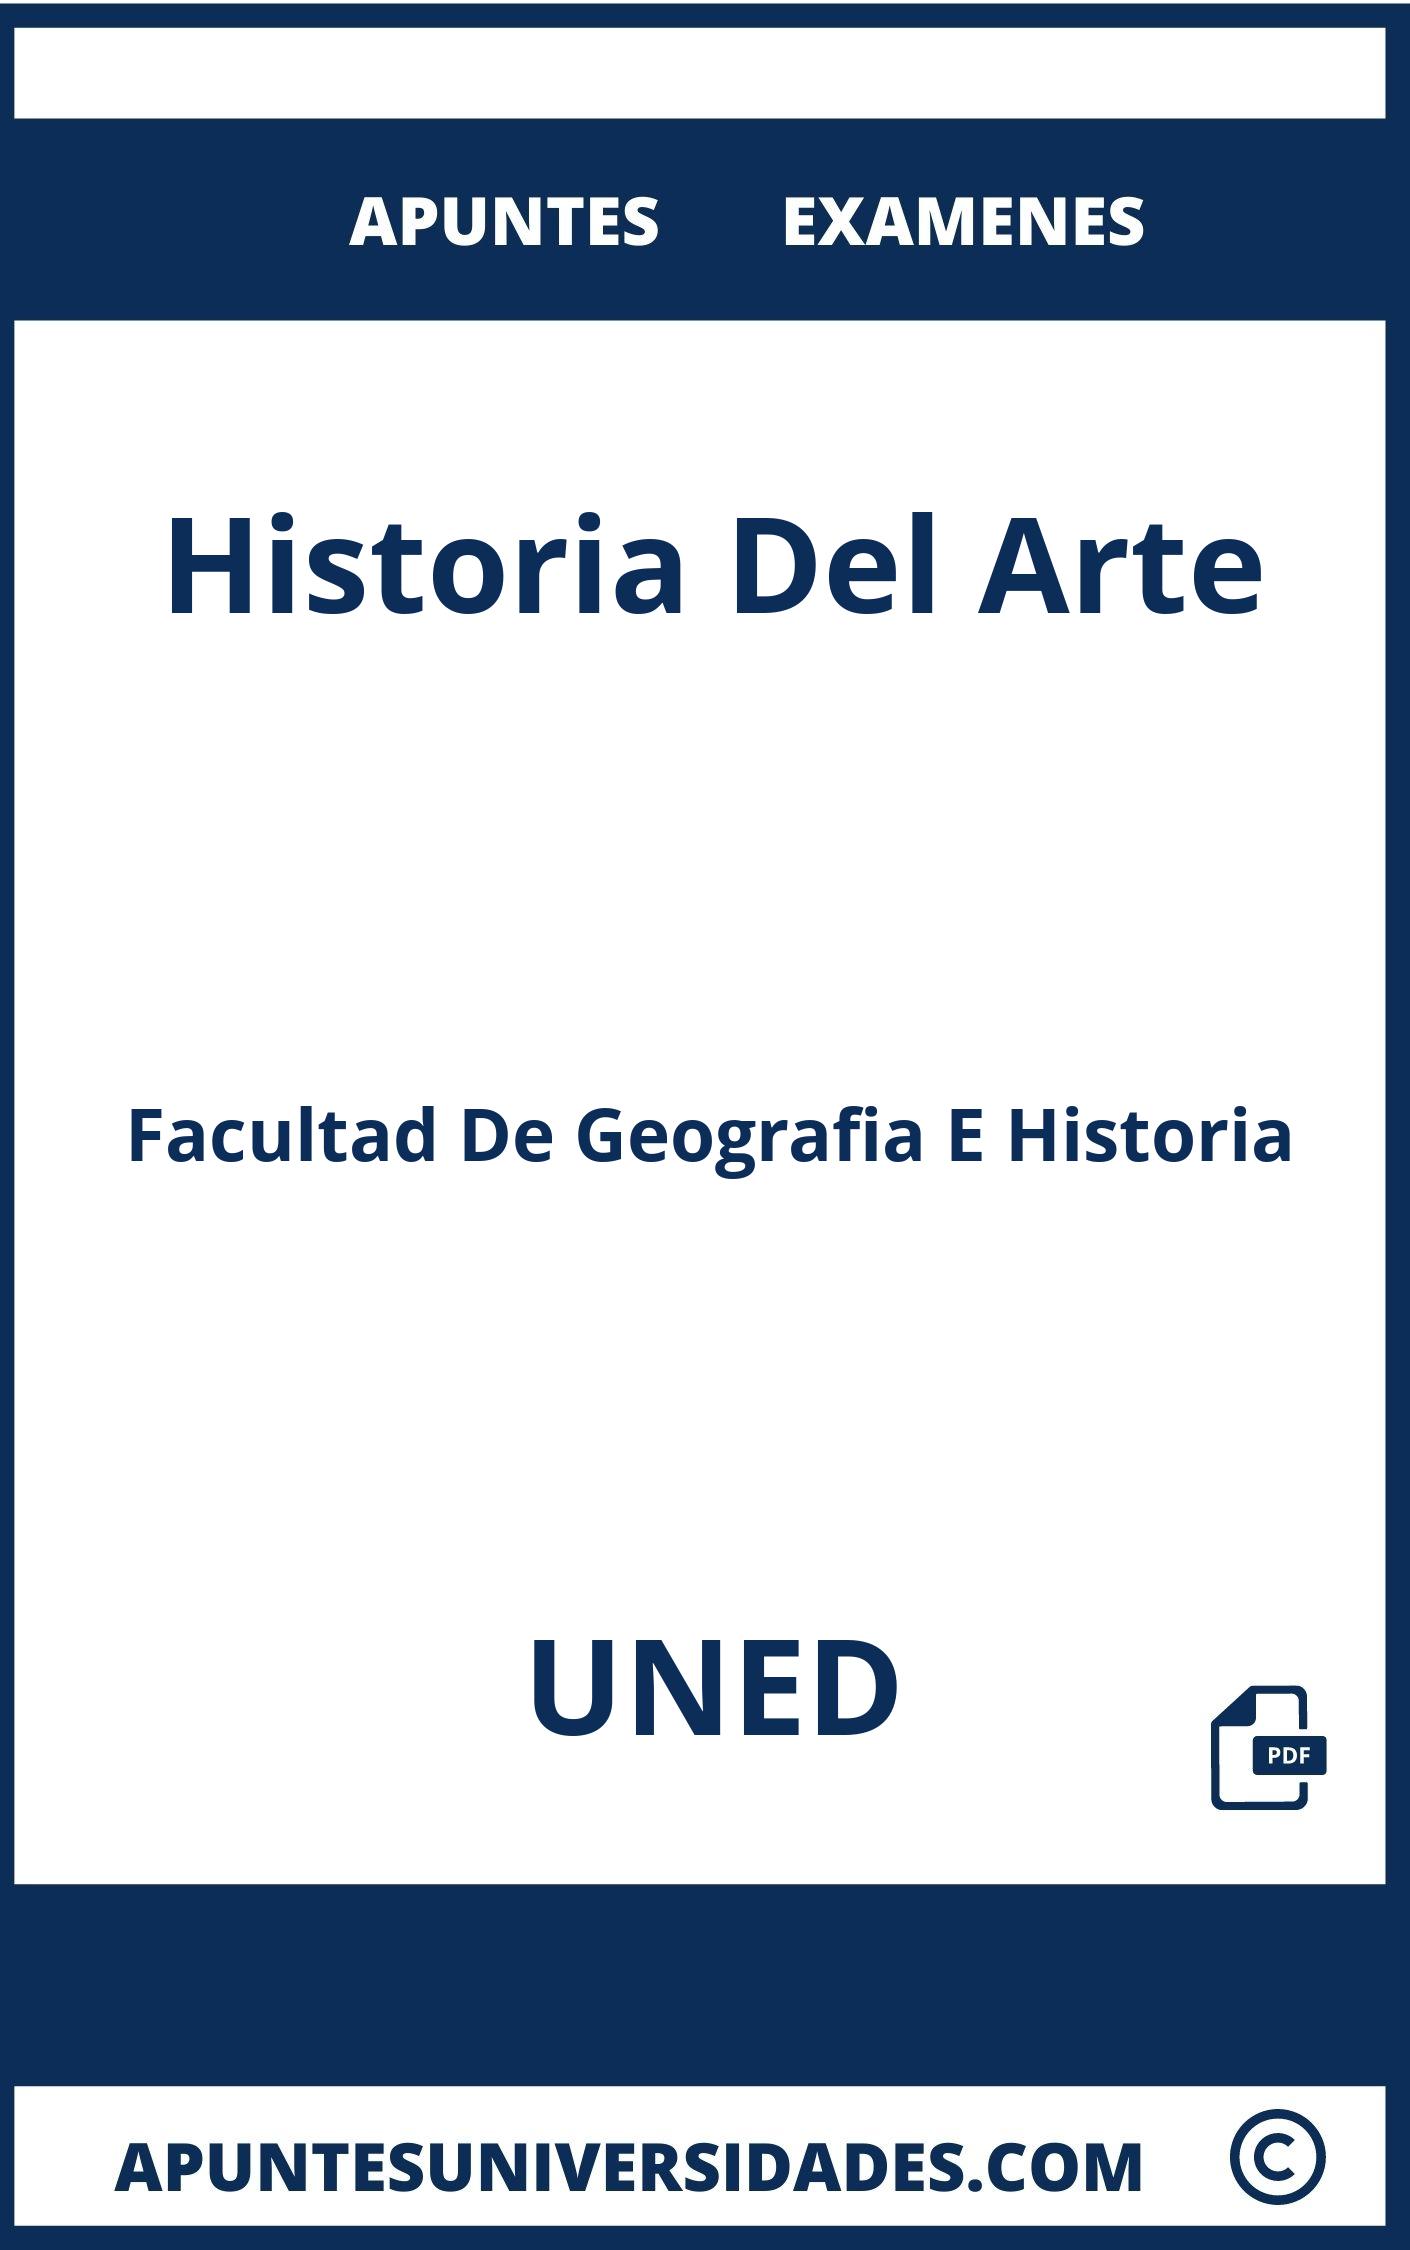 Apuntes y Examenes de Historia Del Arte UNED